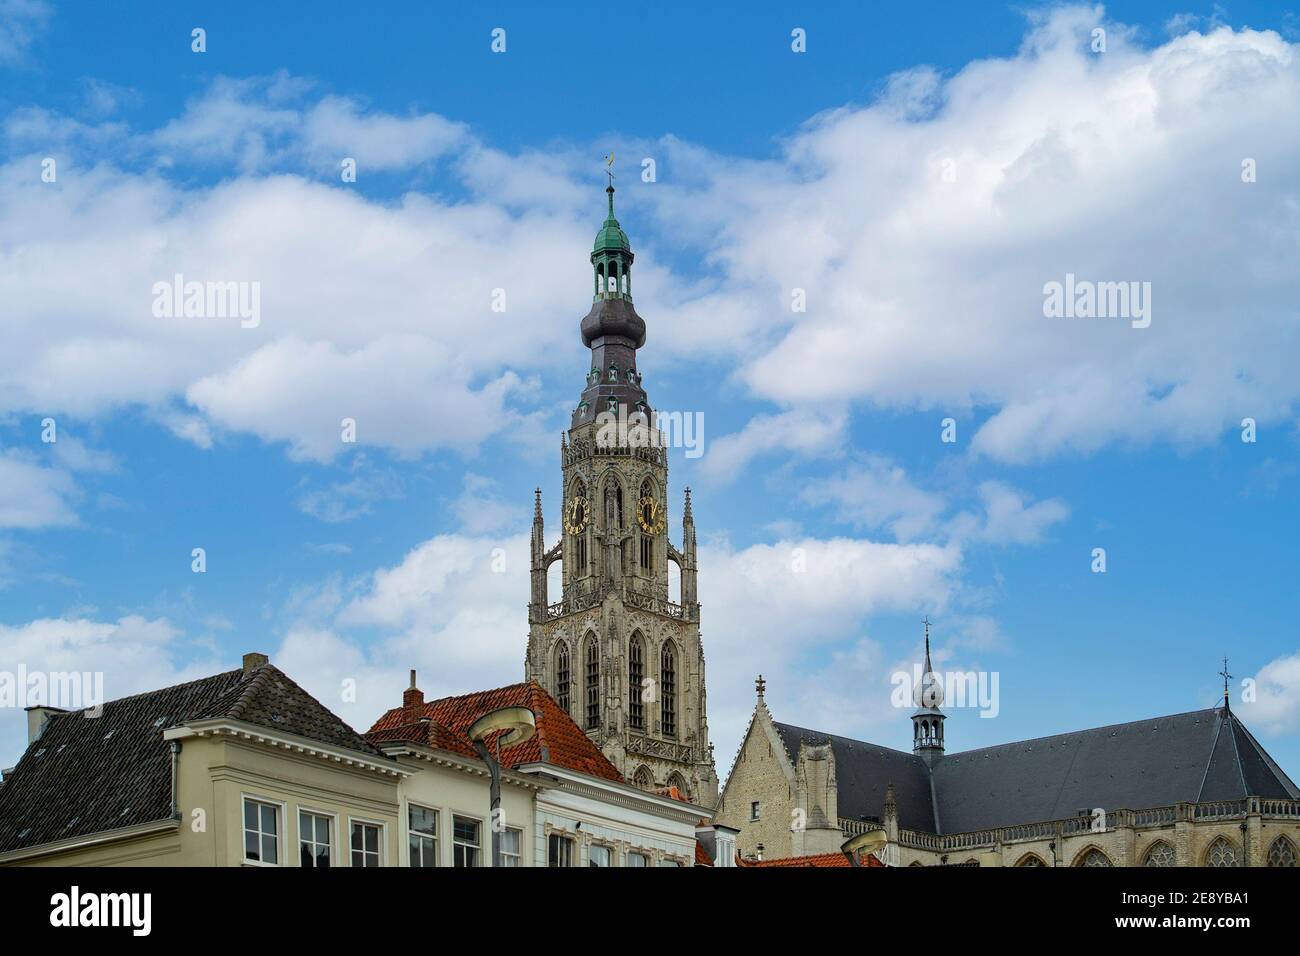 Breda, Nordbrabant, Niederlande - Grote Kerk oder Onze-Lieve-Vrouwekerk (Liebfrauenkirche) wichtiges Denkmal und Wahrzeichen, das in der Brabantine errichtet wurde Stockfoto